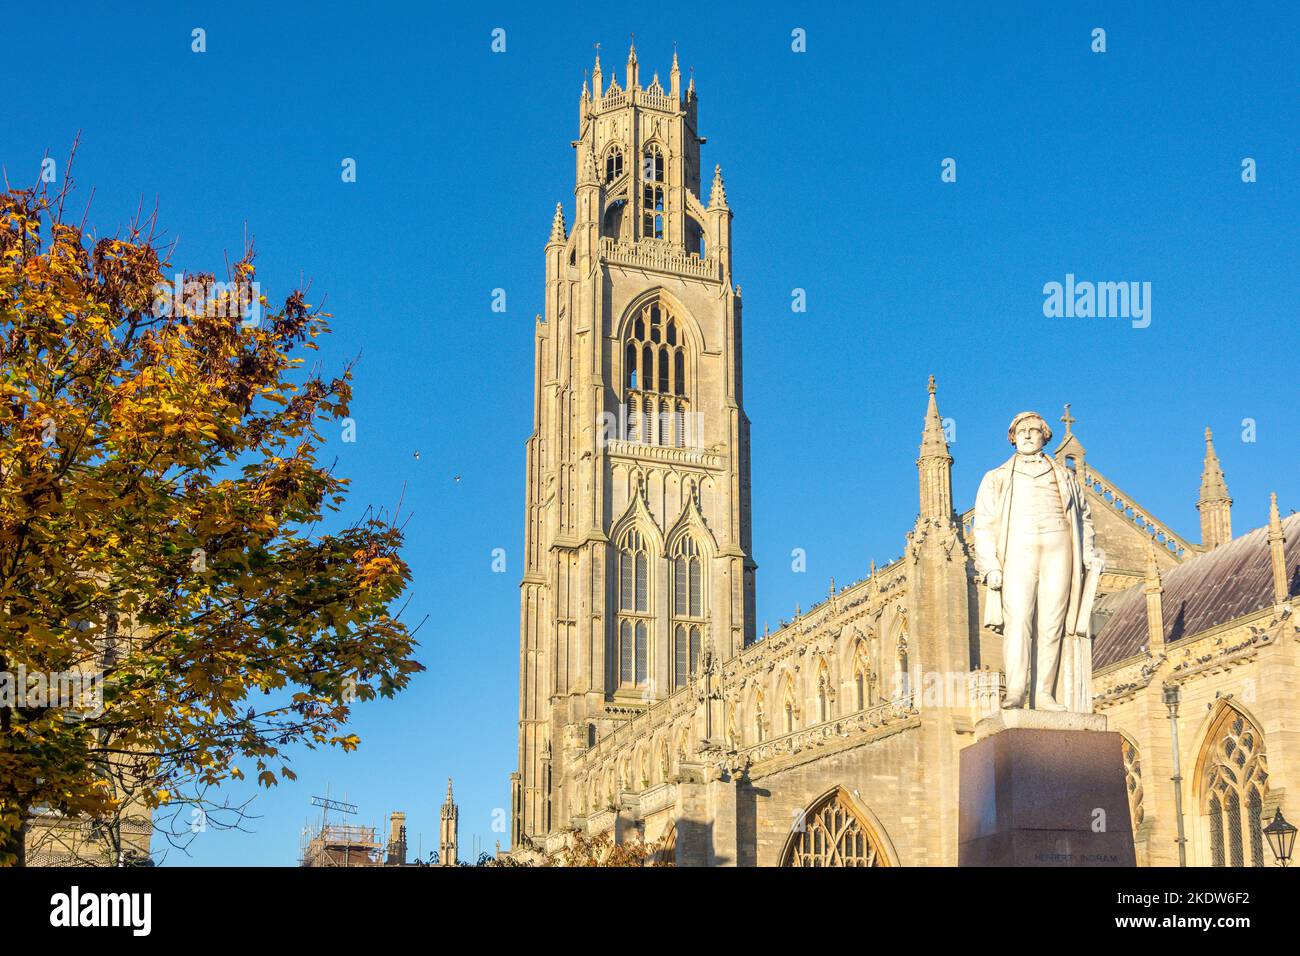 Église St Botolph (The Stump) et statue de Herbert Ingram, Market place, Boston, Lincolnshire, Angleterre, Royaume-Uni Banque D'Images